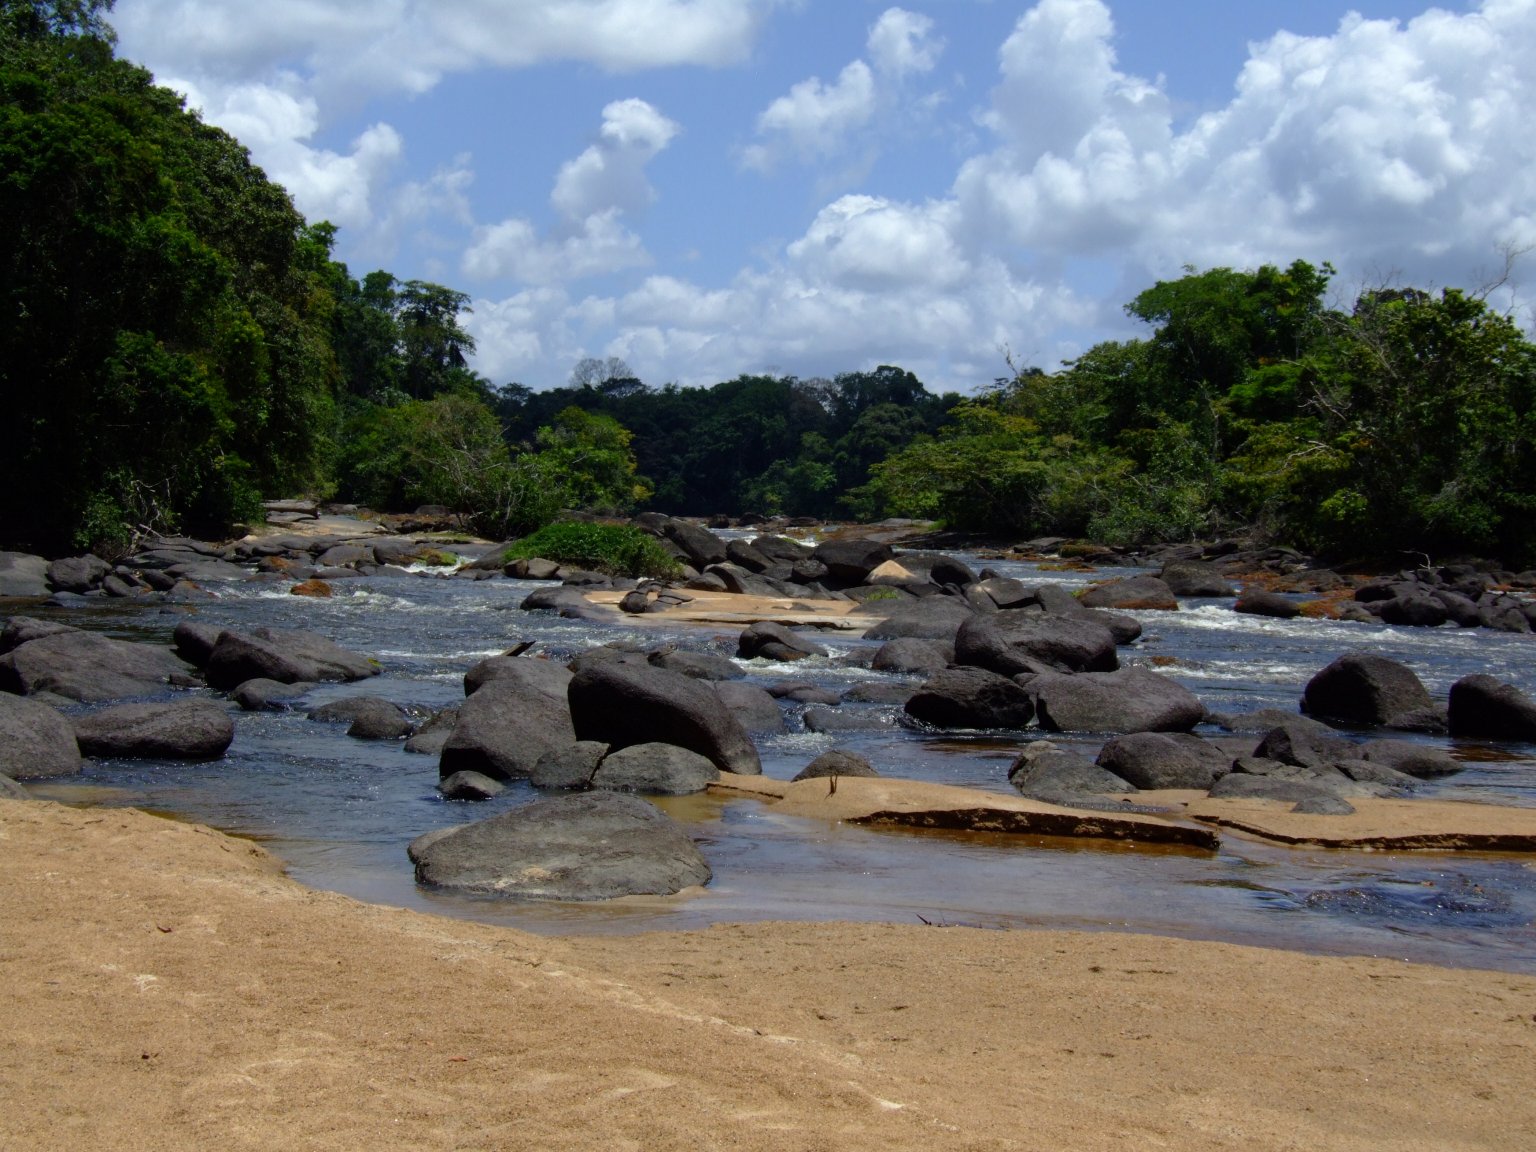 The Awarradam rapids in the Gran Rio